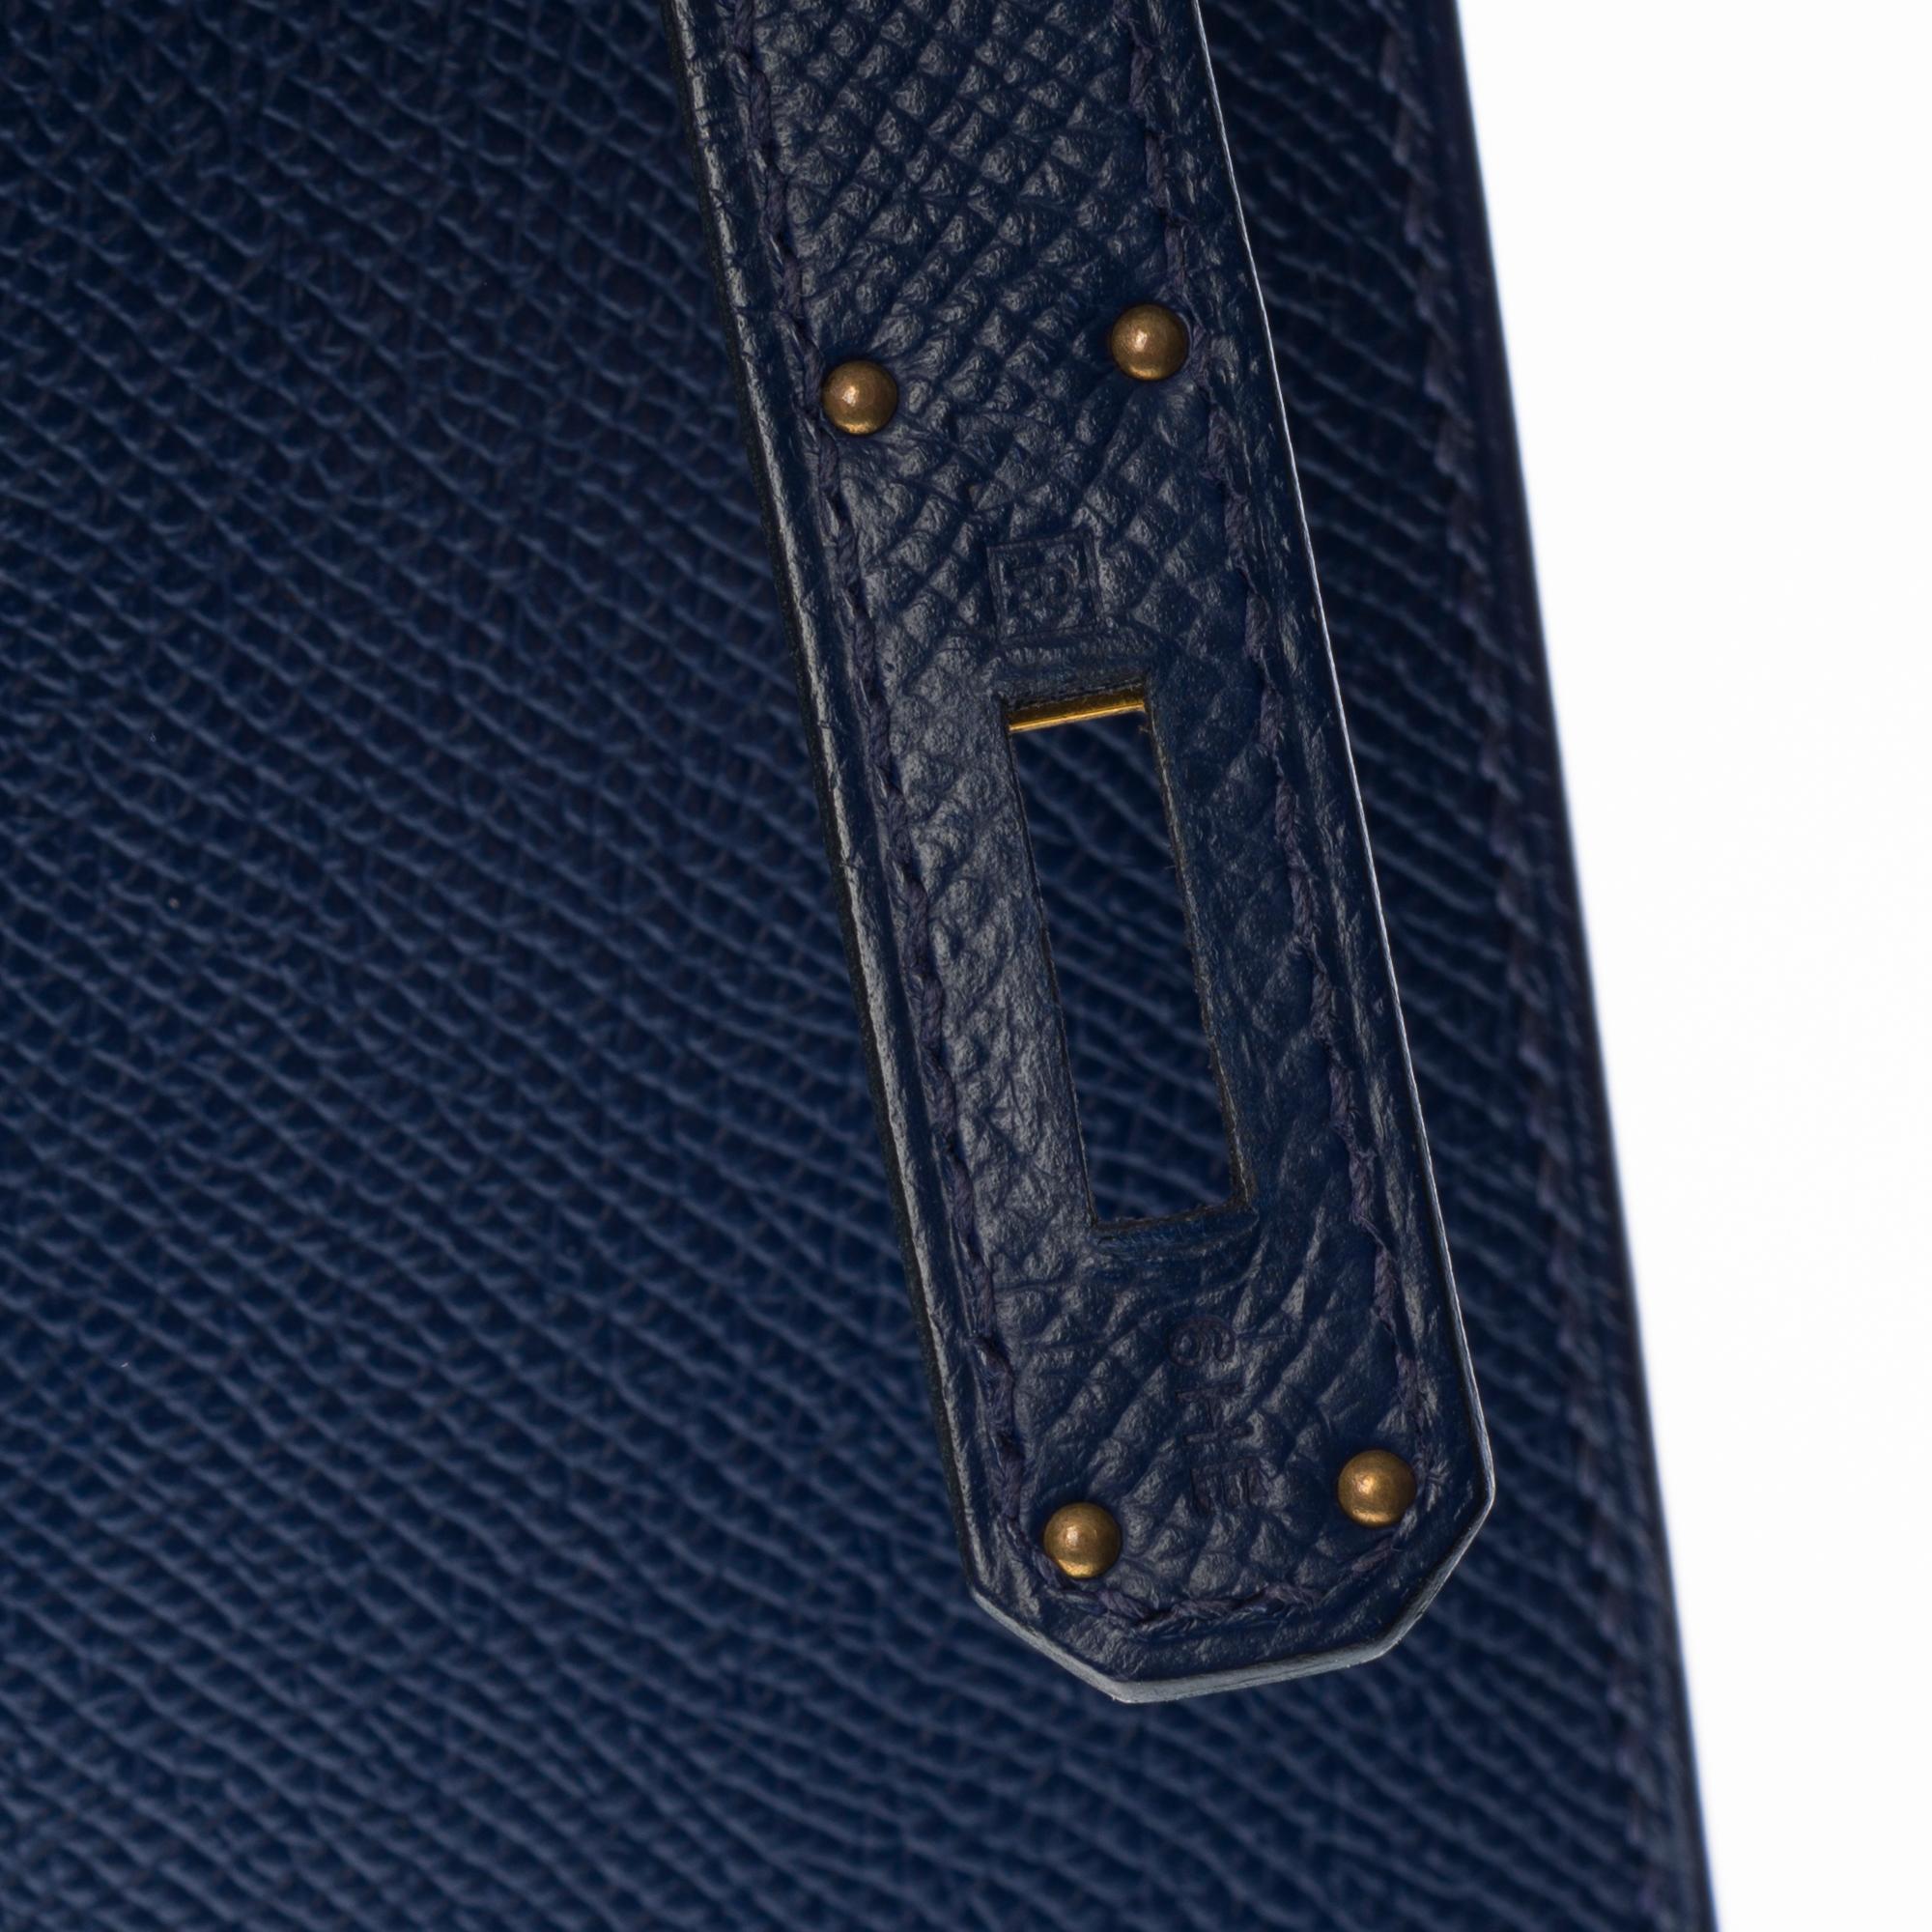 Hermès Kelly 35 sellier strap shoulder bag in epsom blue saphir leather, GHW 1